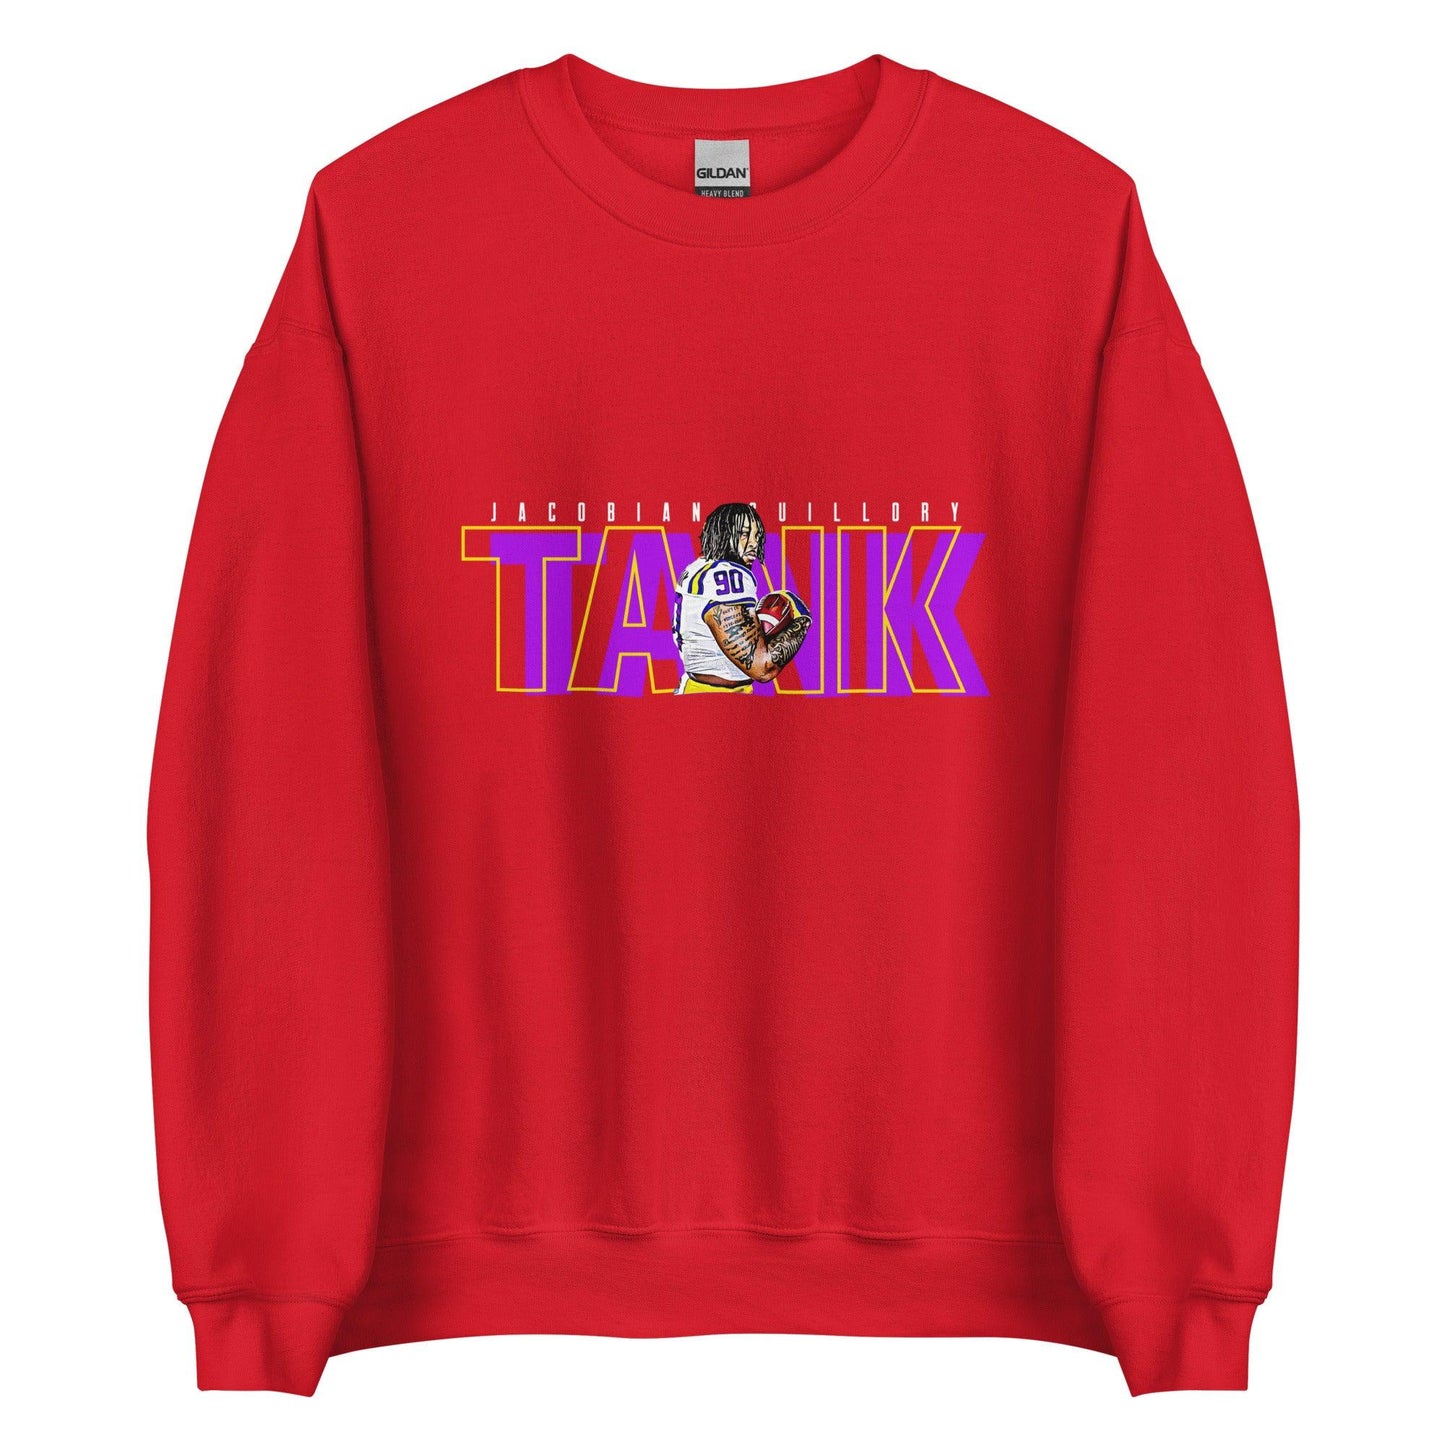 Jacobian Guillory "TANK" Sweatshirt - Fan Arch